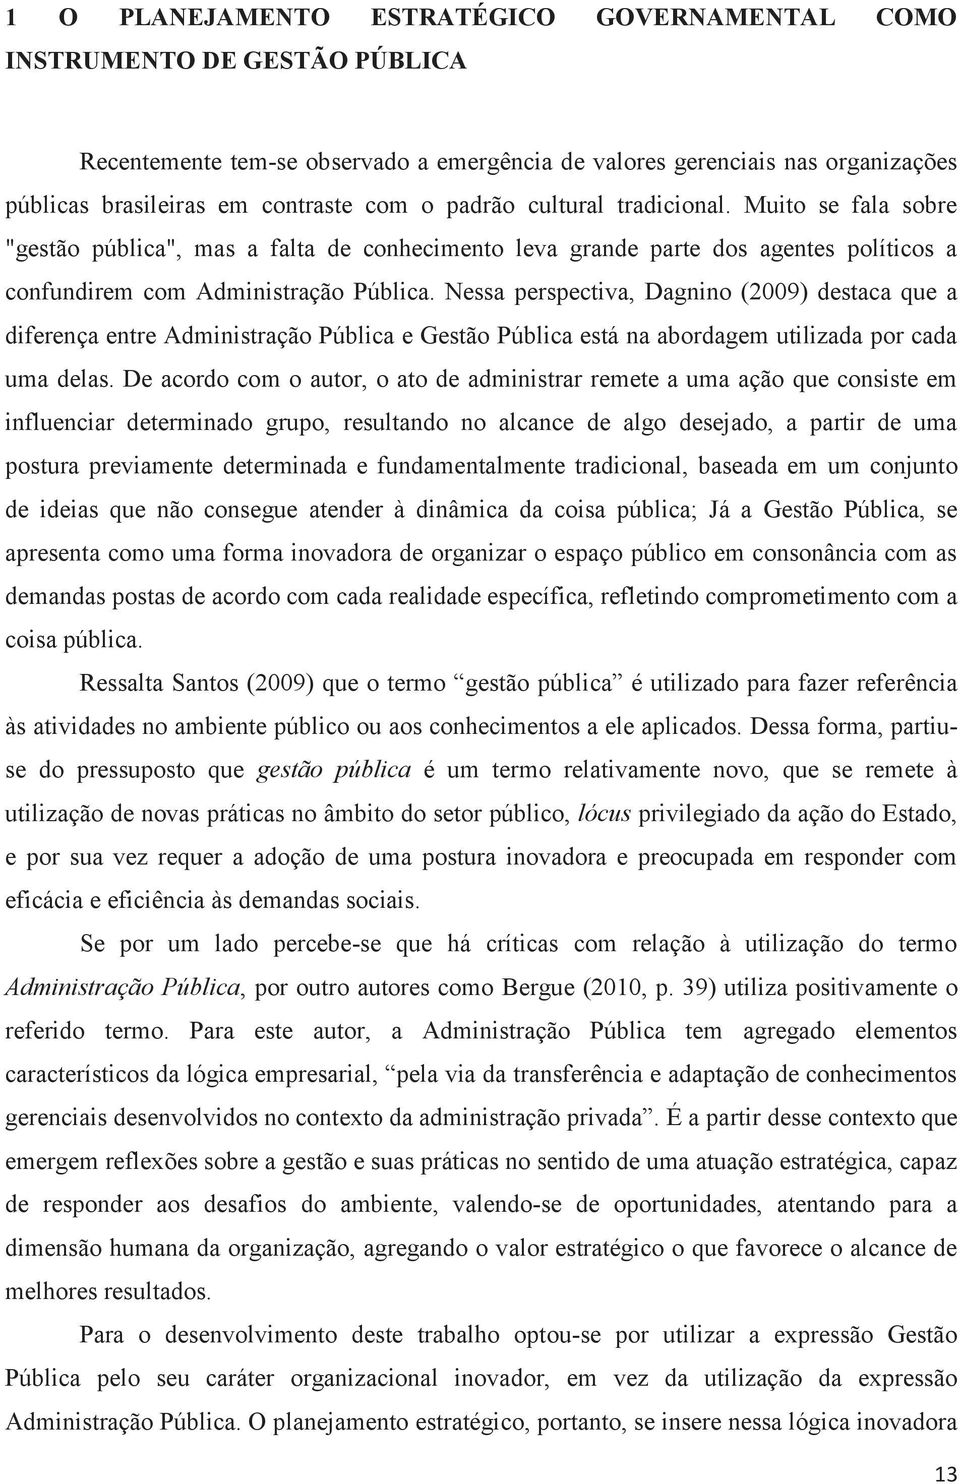 Nessa perspectiva, Dagnino (2009) destaca que a diferença entre Administração Pública e Gestão Pública está na abordagem utilizada por cada uma delas.